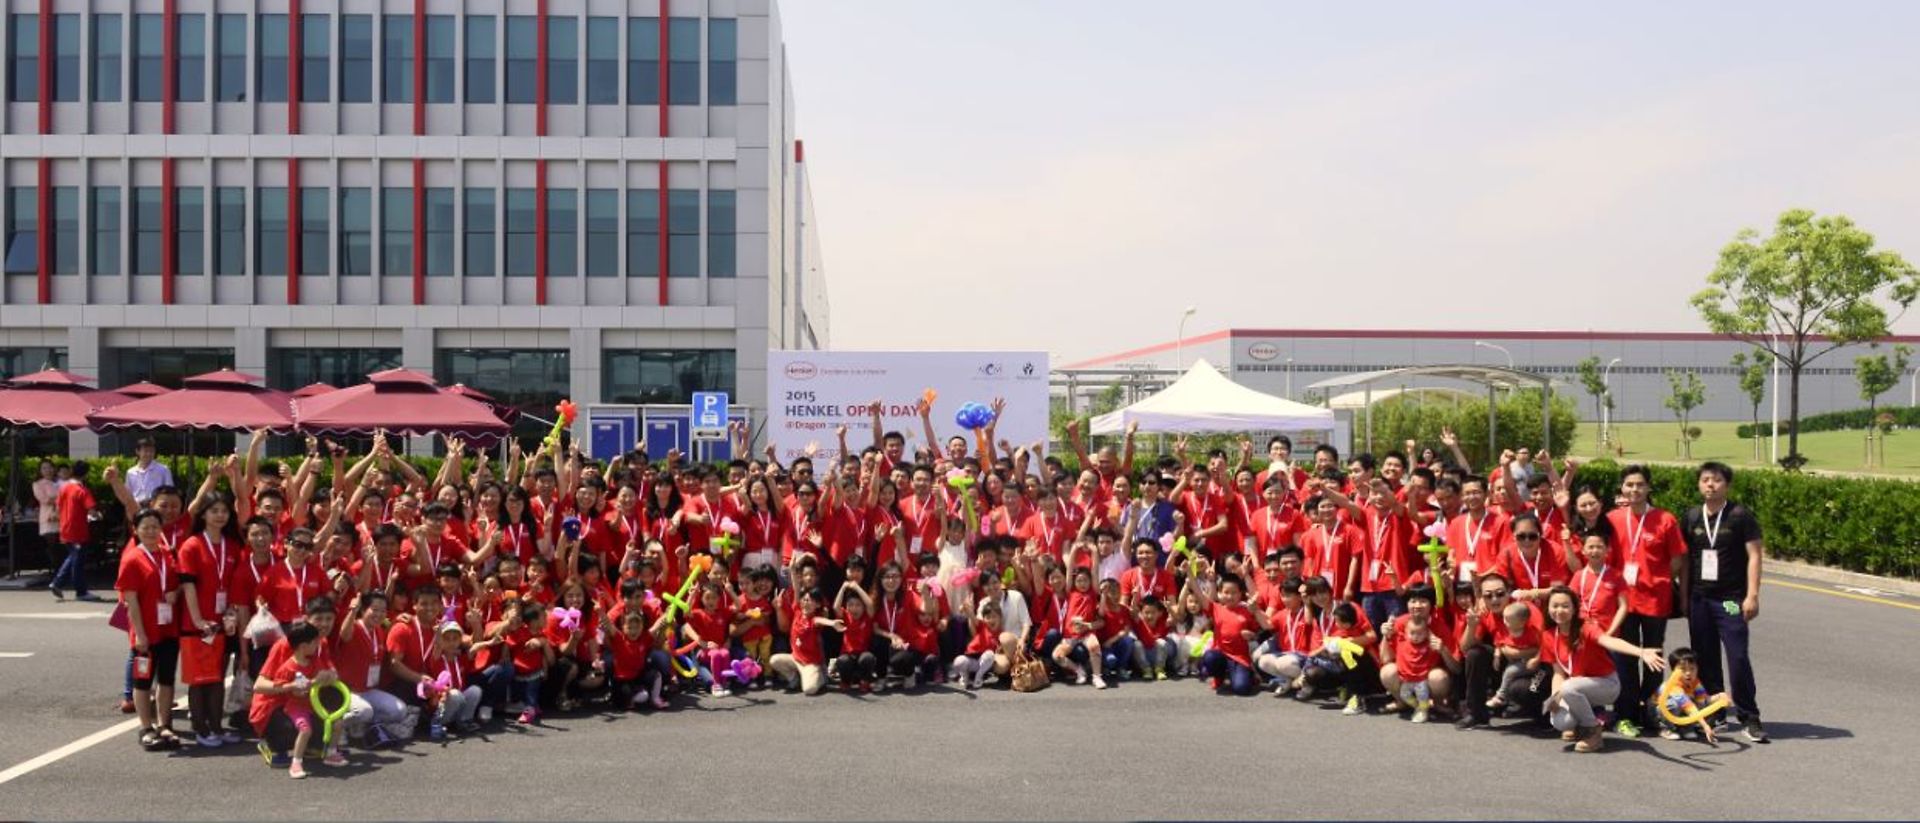 
汉高“龙工厂”开放日迎来了350位公众参与